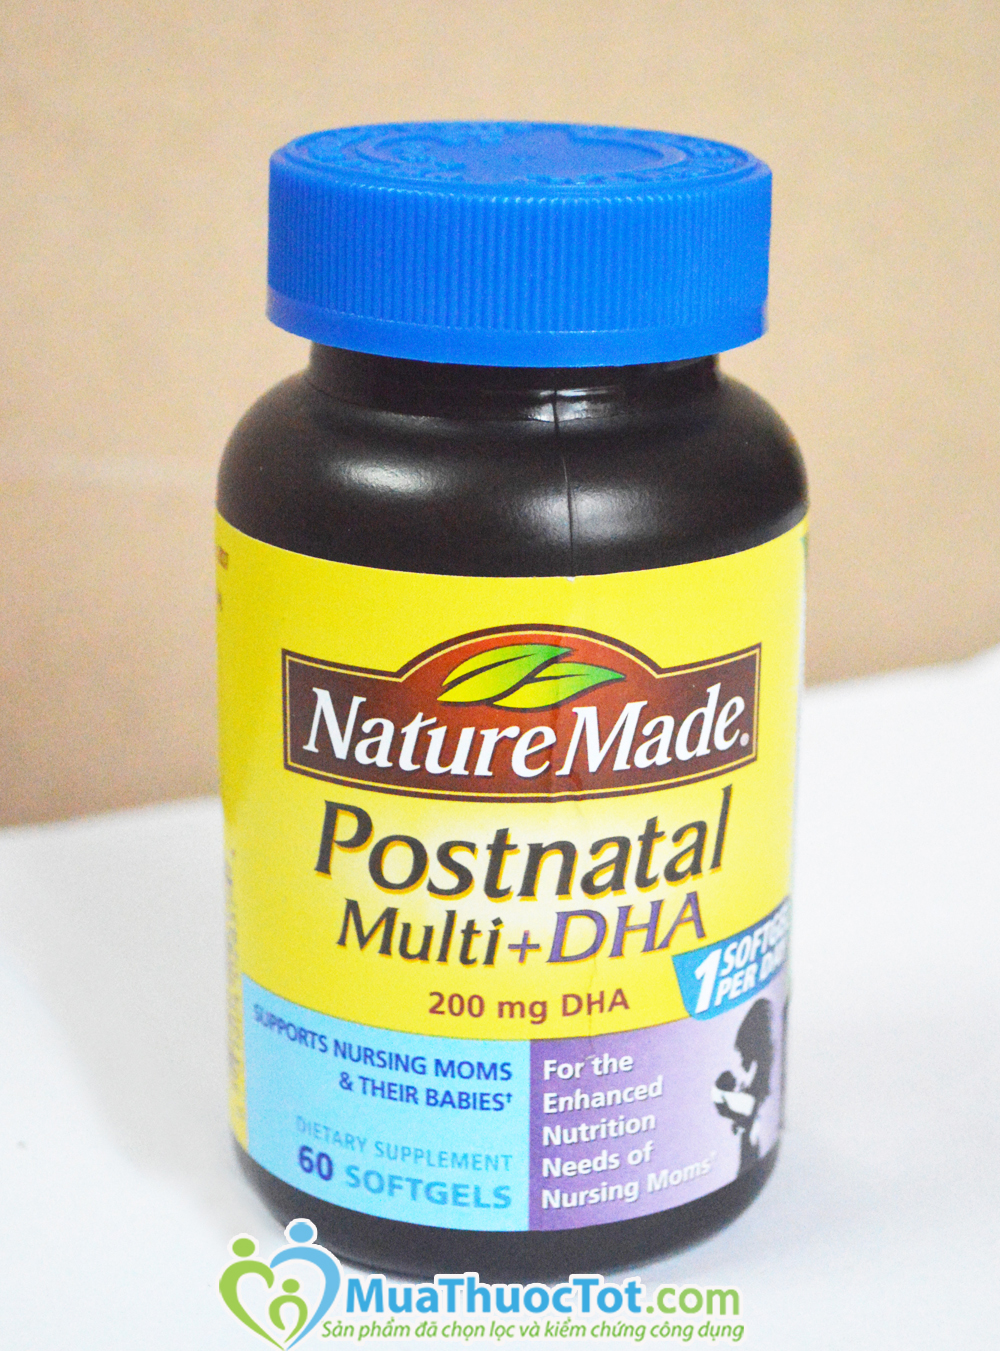 Natural Made Postnatal sản phẩm dành cho bà mẹ đang cho con bú bán chạy nhất hiện nay